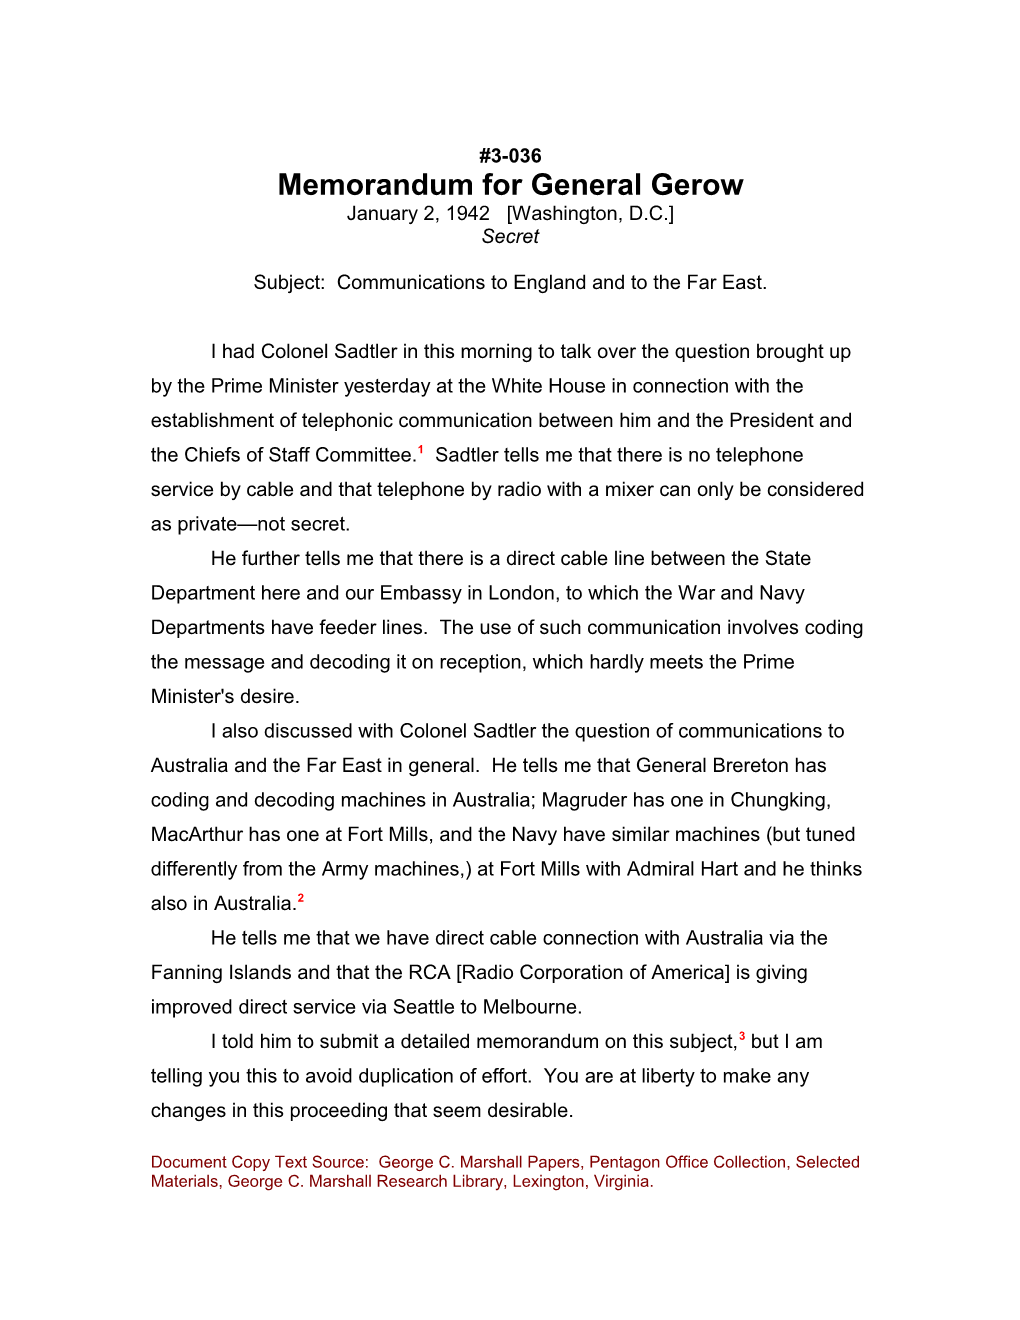 Memorandum for General Gerow